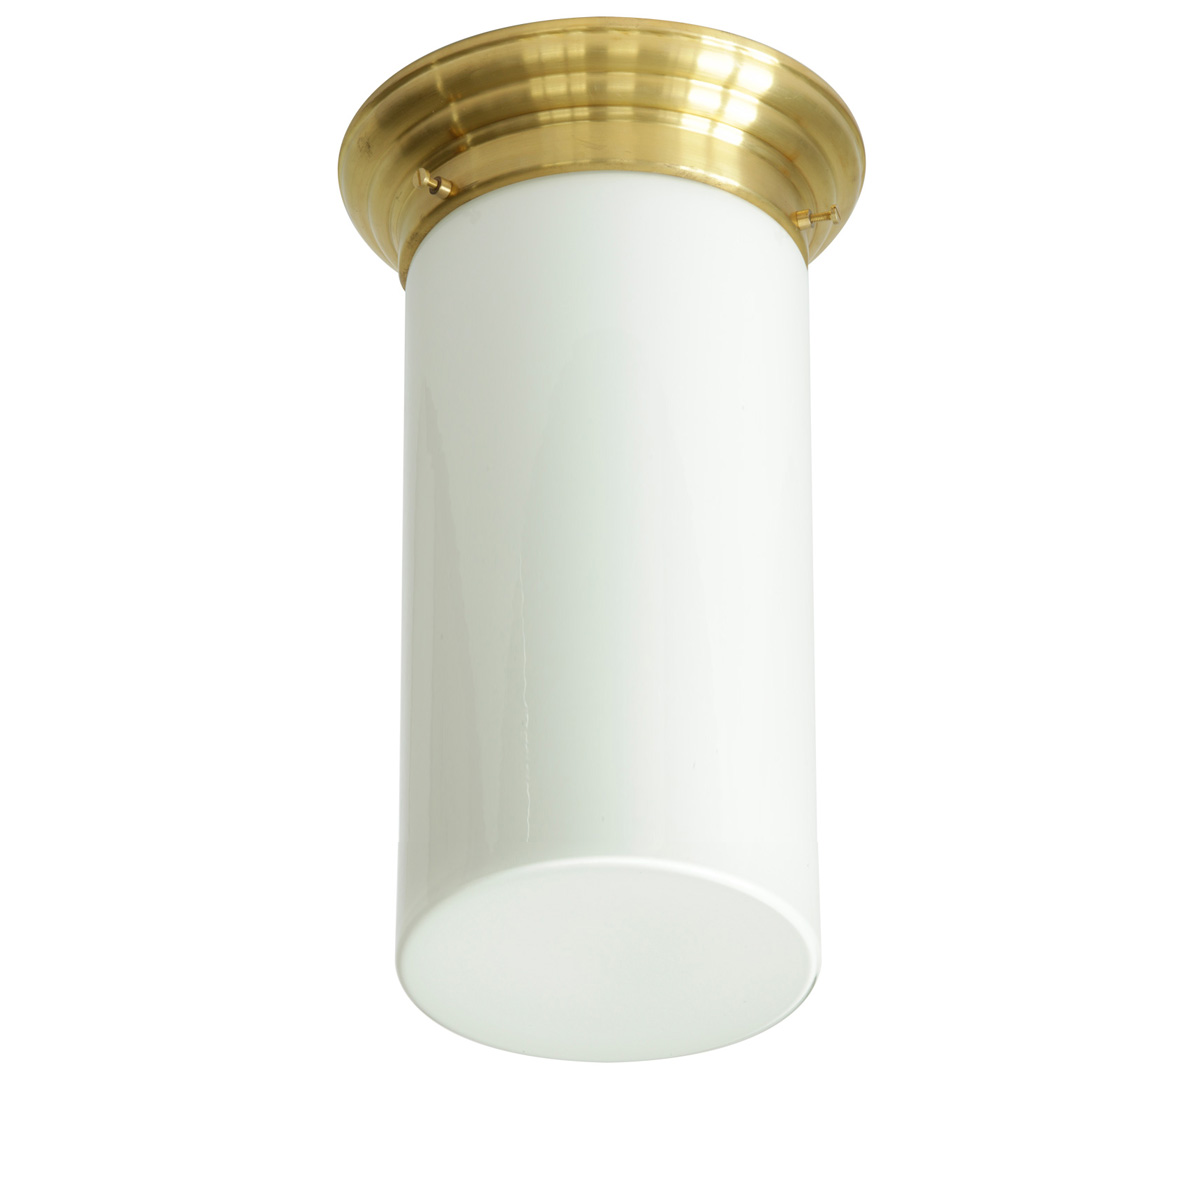 Messing-Deckenleuchte mit schlankem Opalglas-Tubus, Ø 11 cm